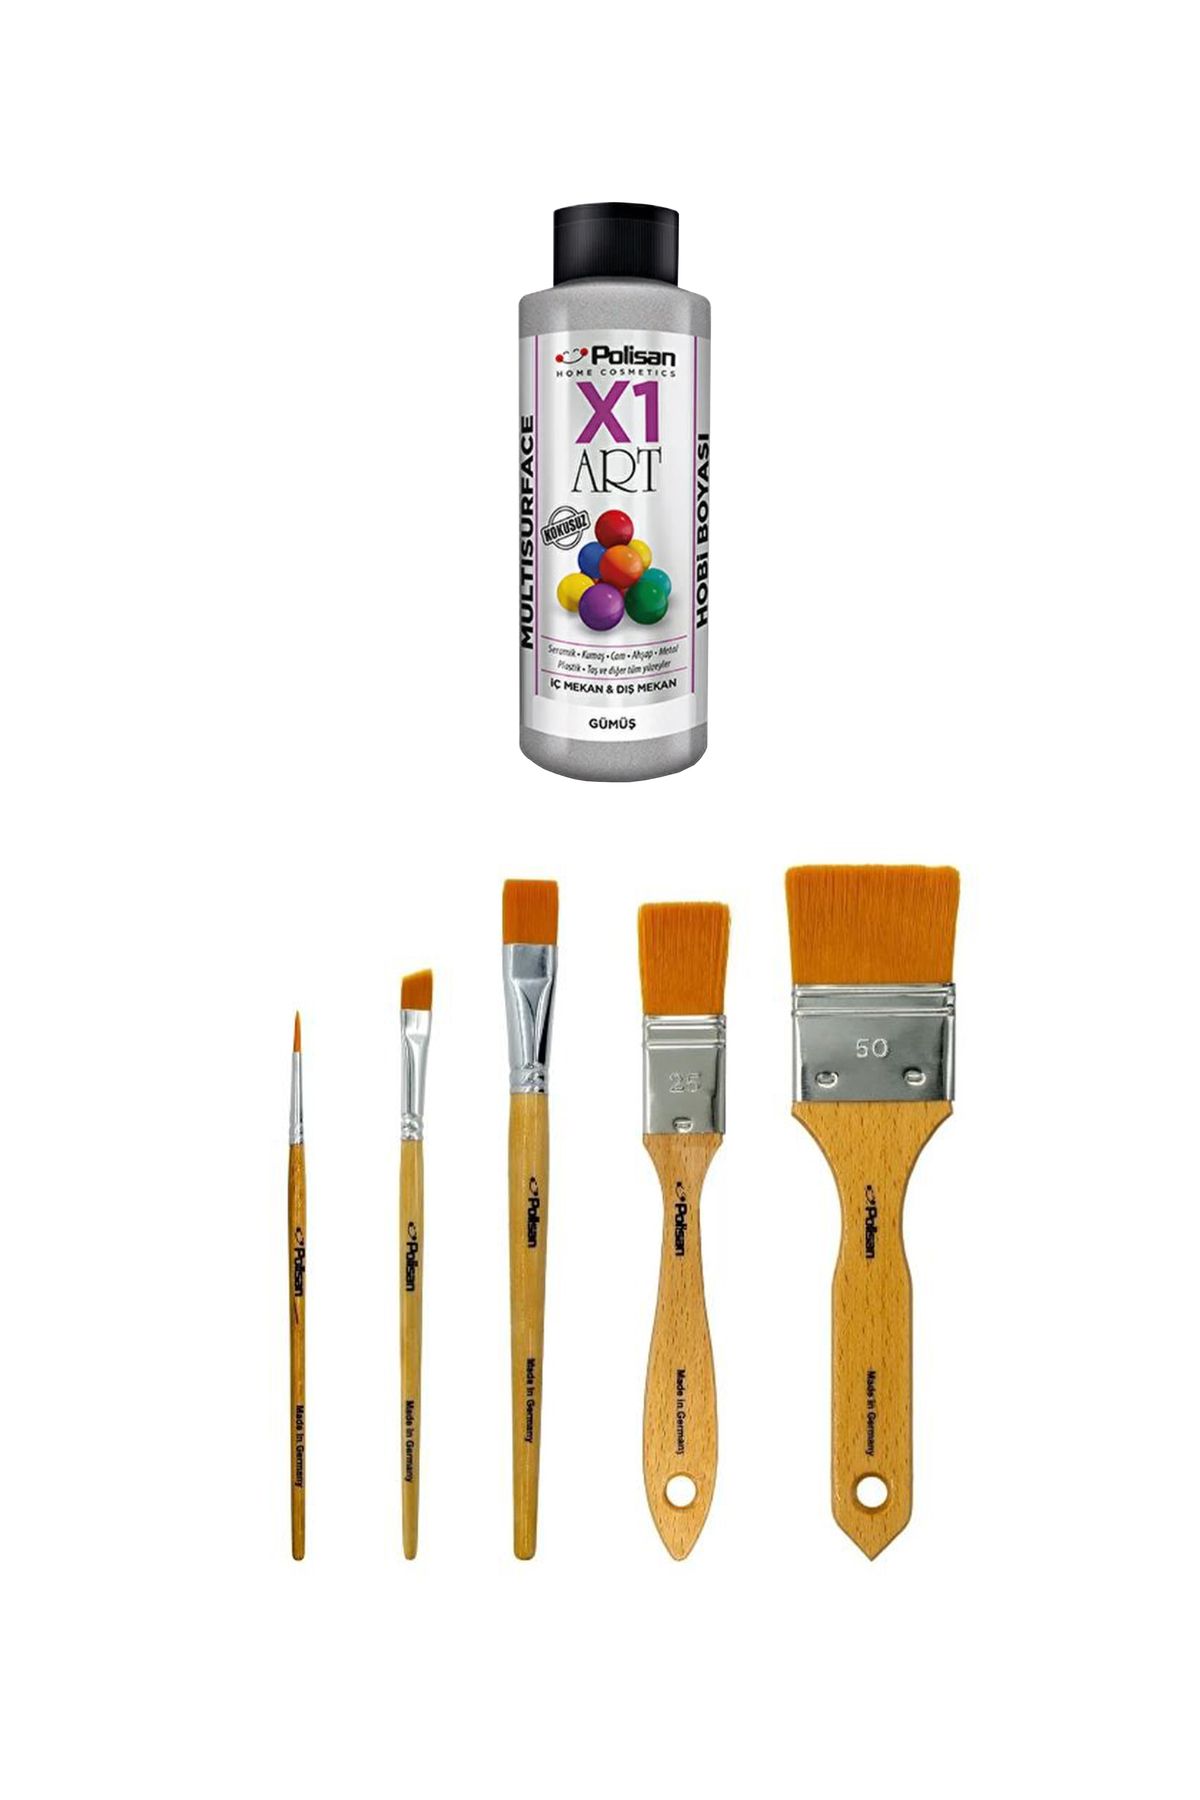 Polisan X1 Art Yaldızlı Akrilik Hobi Boyası 120ml - Gümüş + X1 Art Pro Hobi İpek Fırça Seti